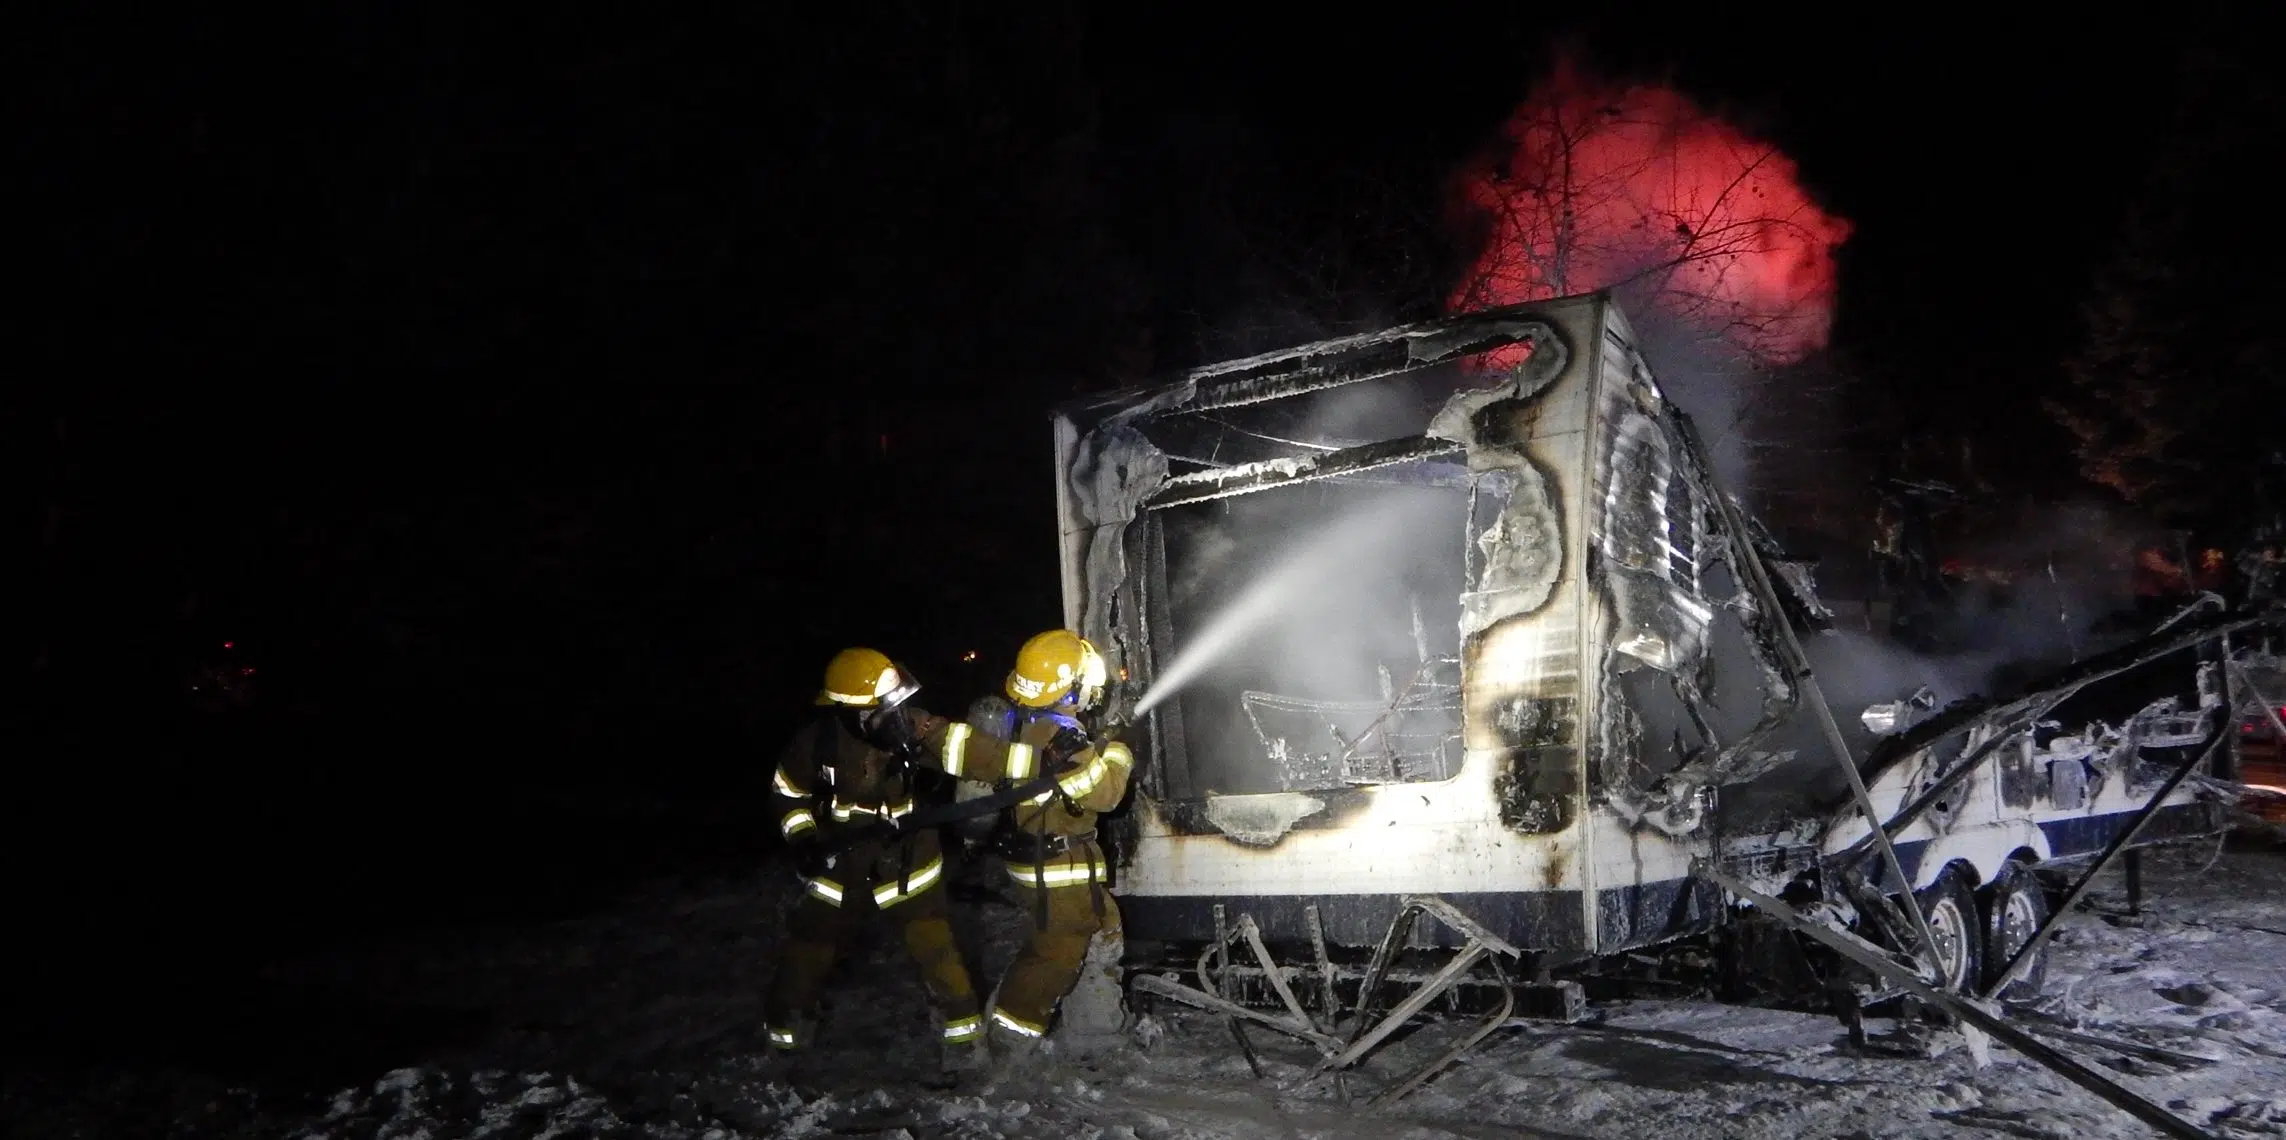 Fire Destroys RV In Shuniah